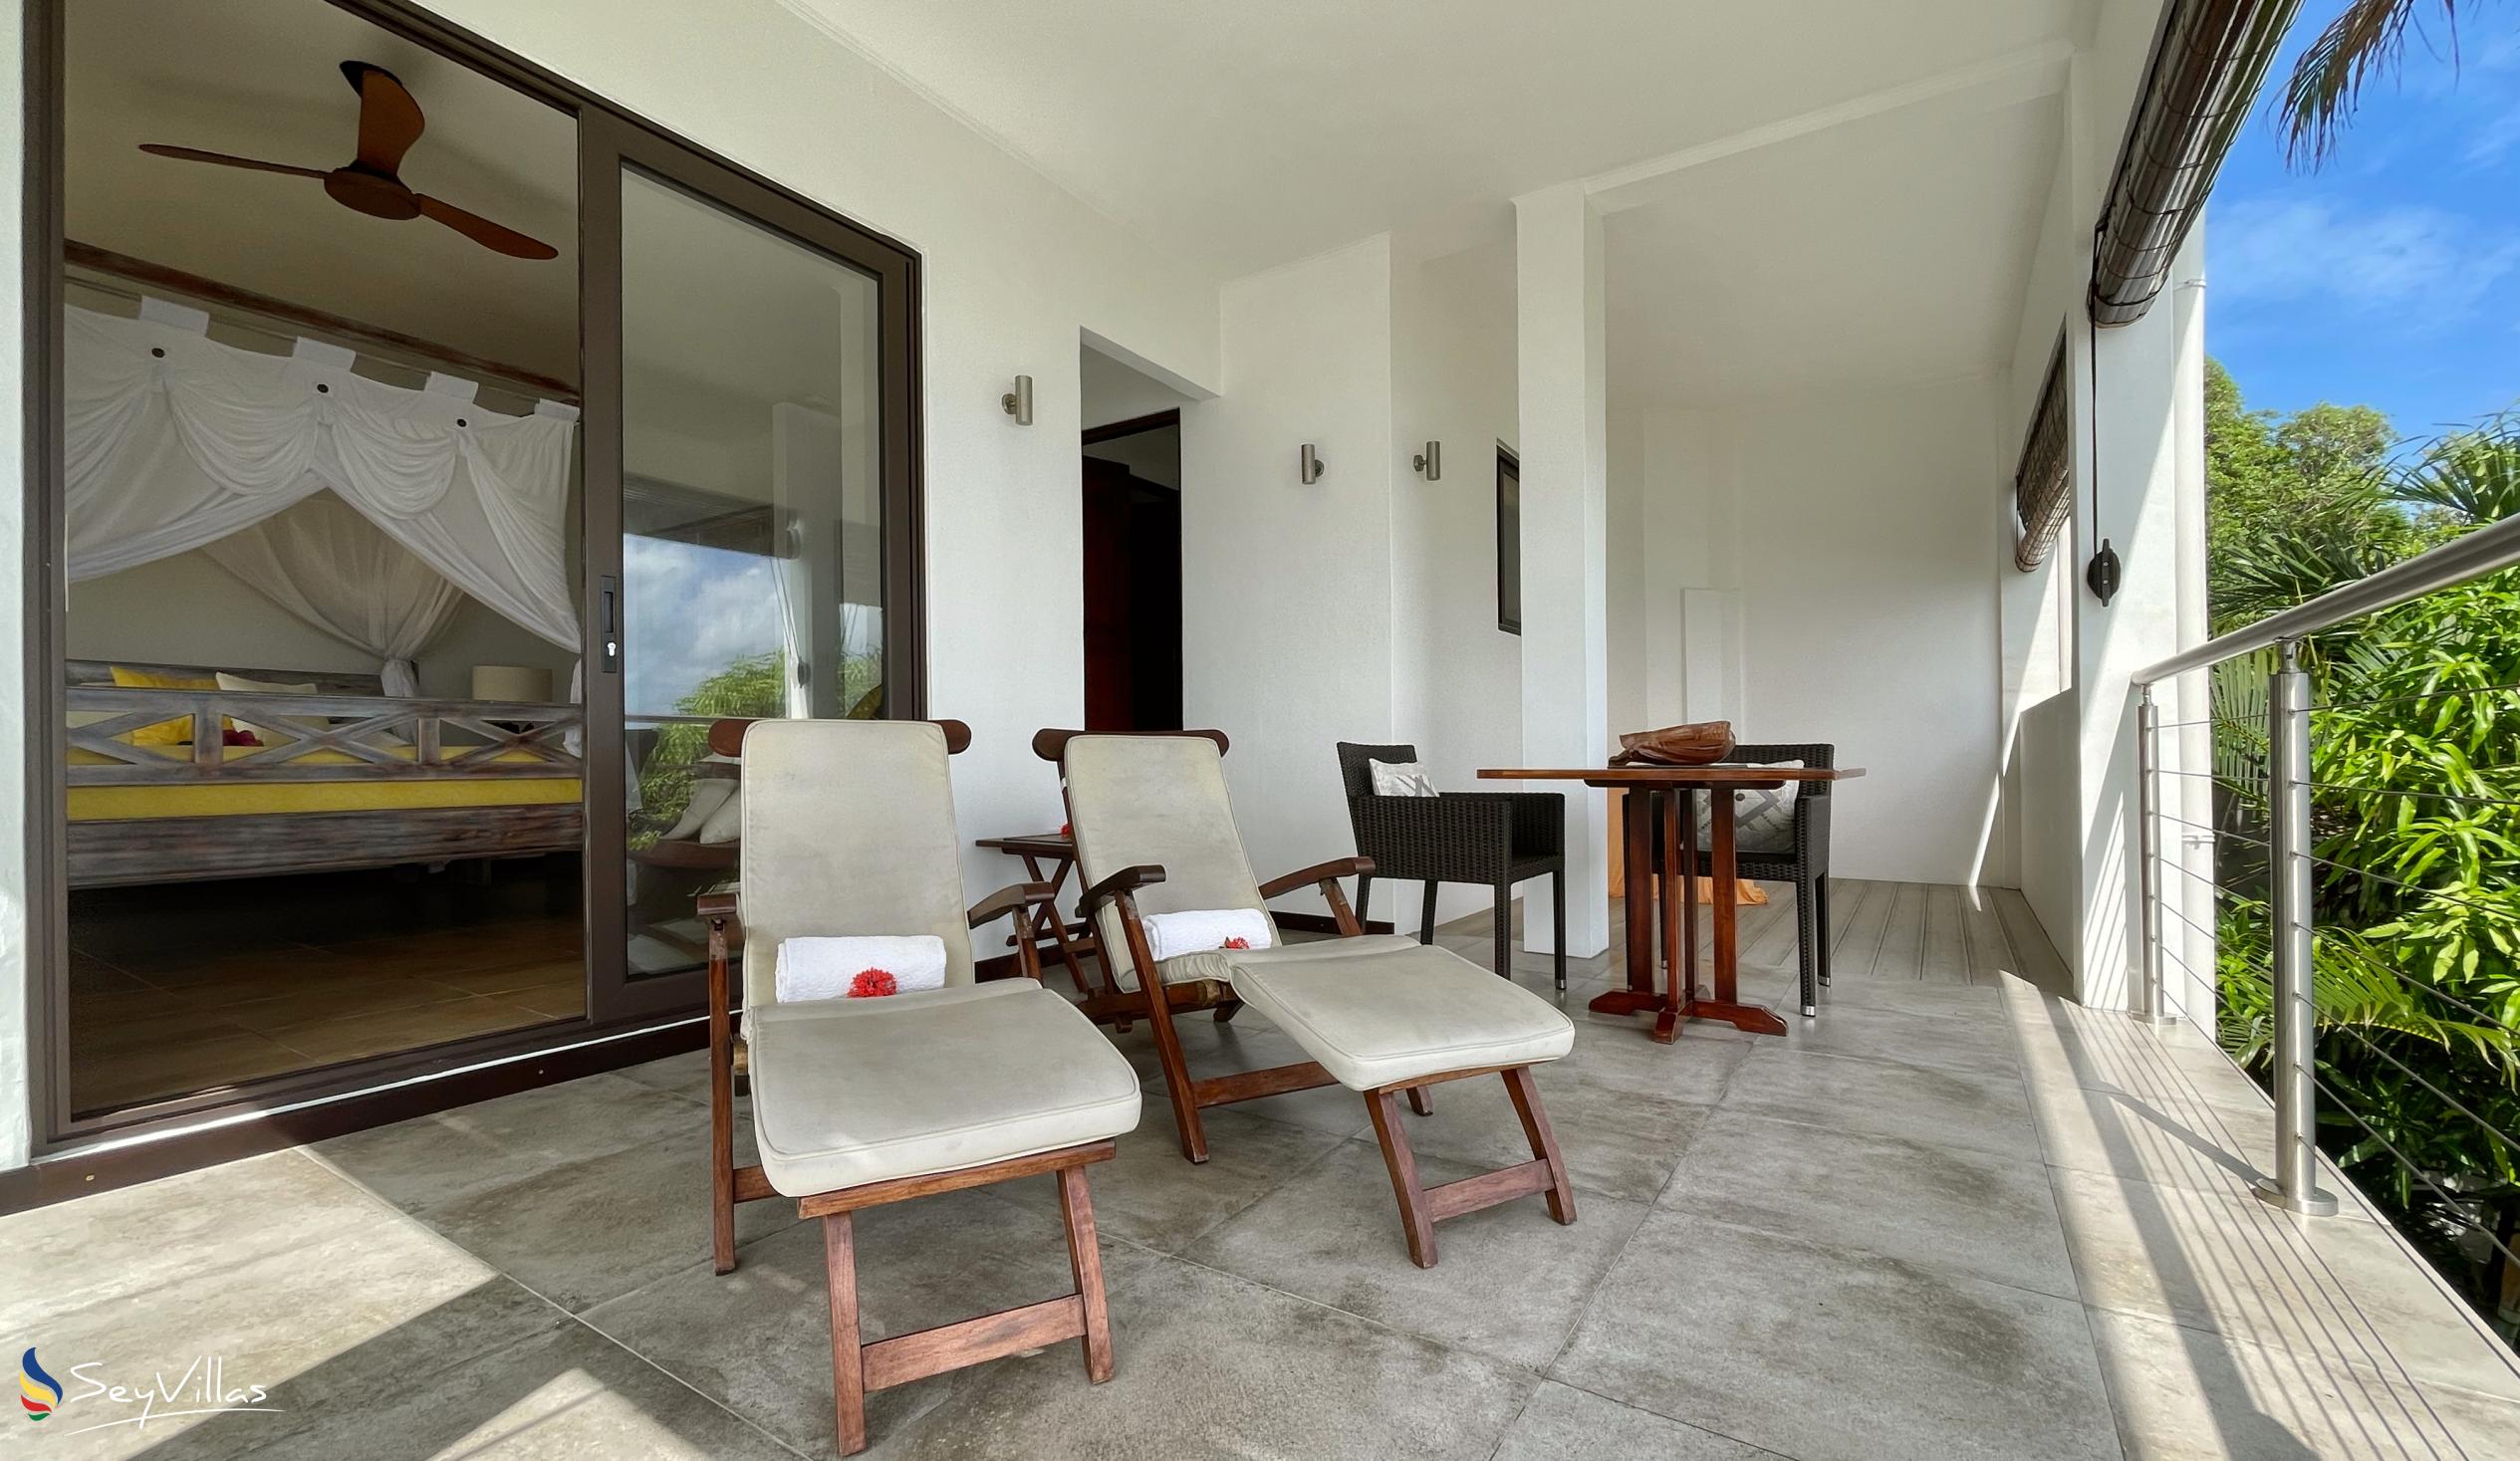 Photo 108: Chalets Bougainville - Ground Floor Apartment Villa Lemon - Mahé (Seychelles)